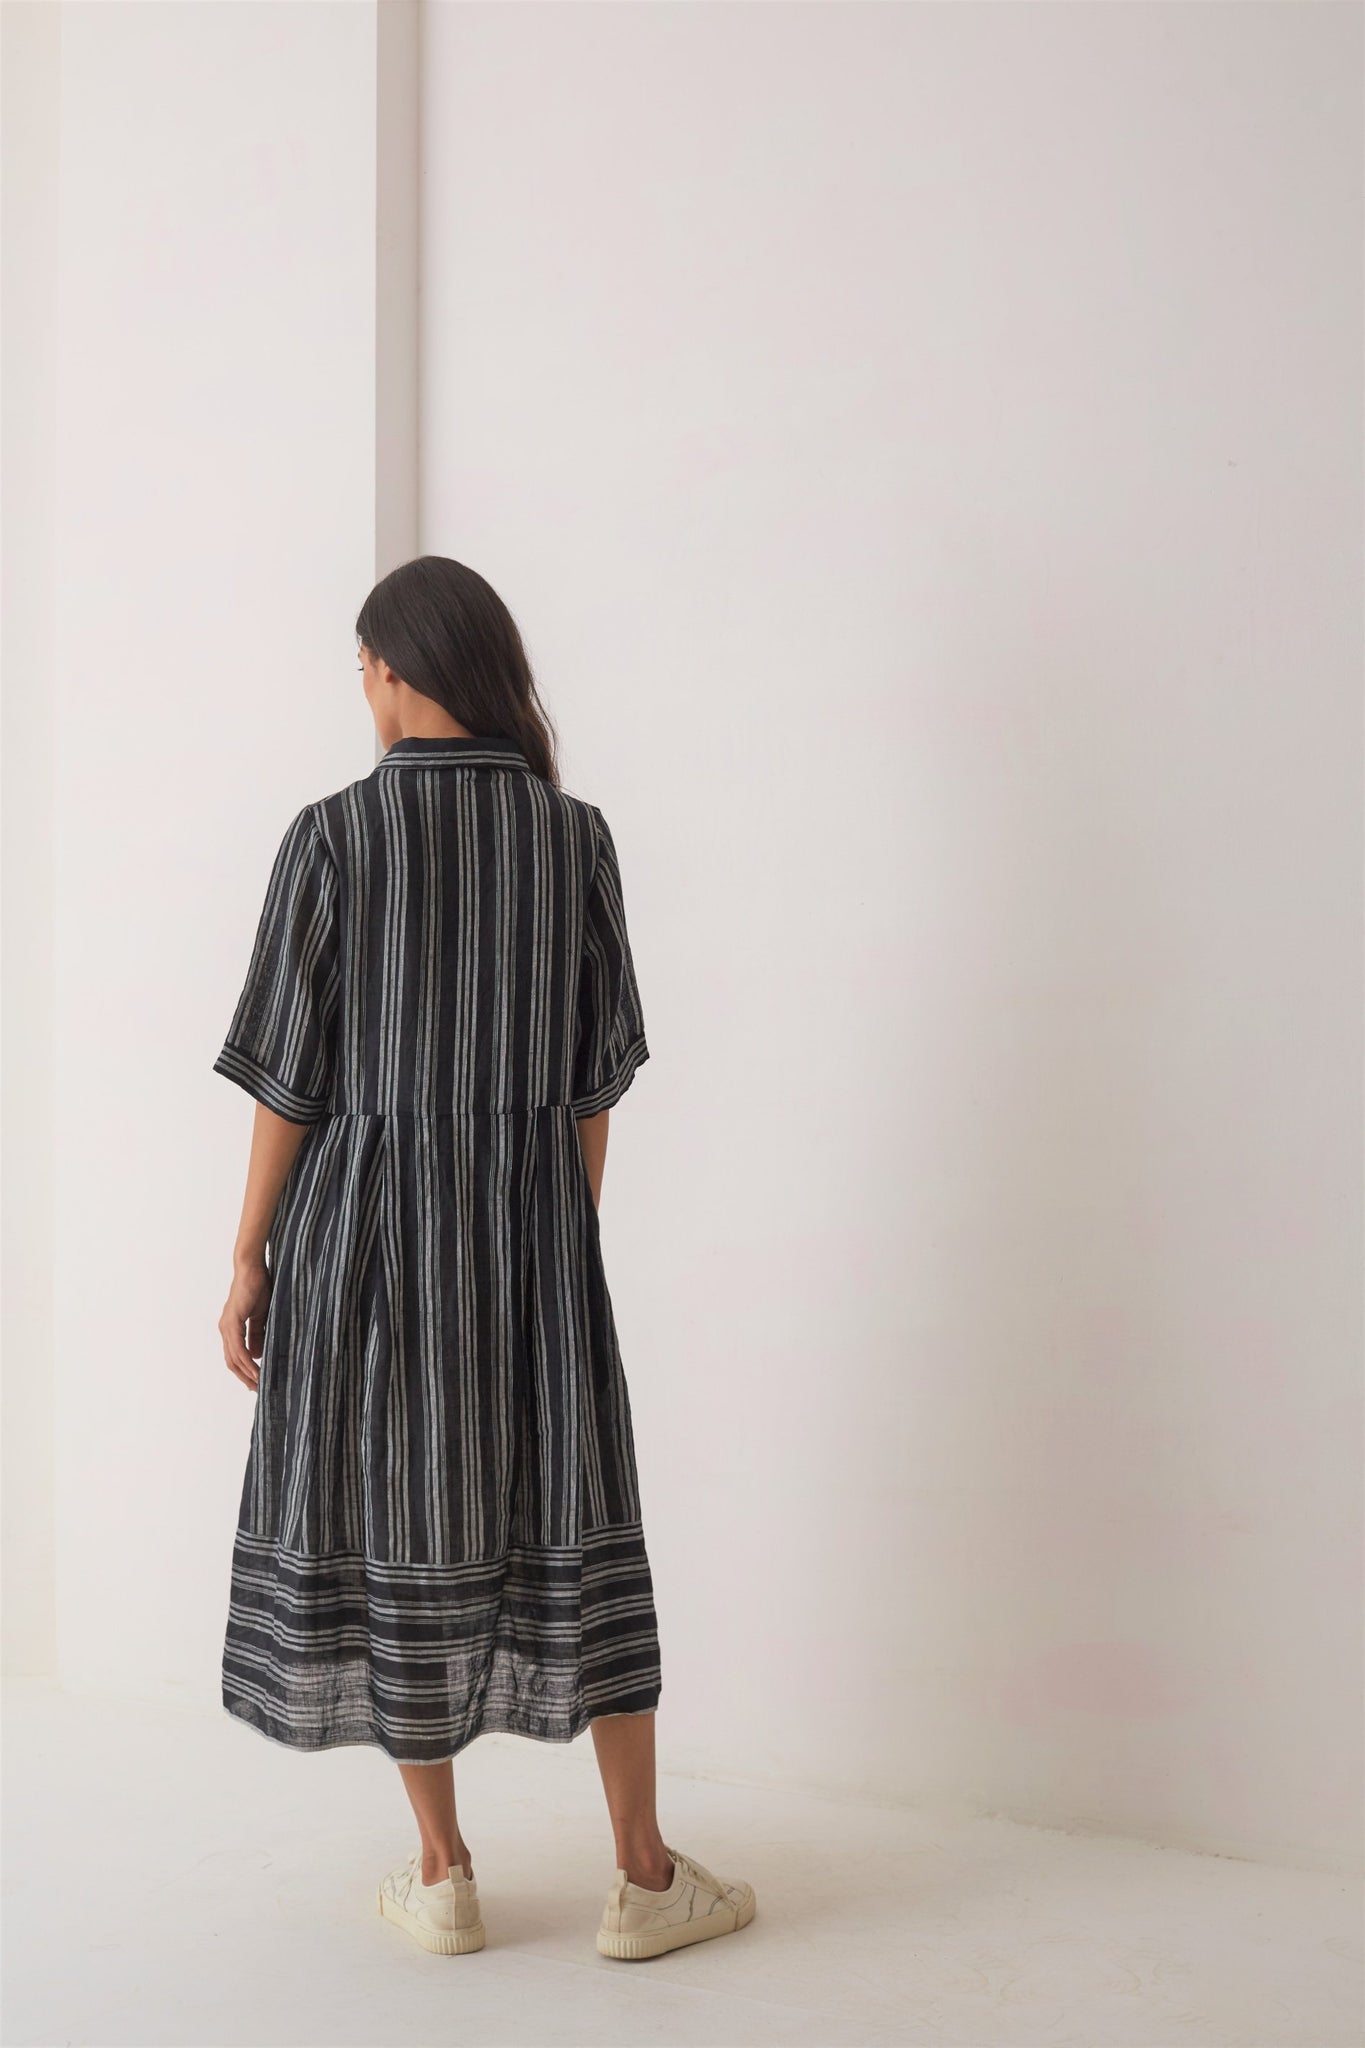 handwoven striped black linen kiki dress